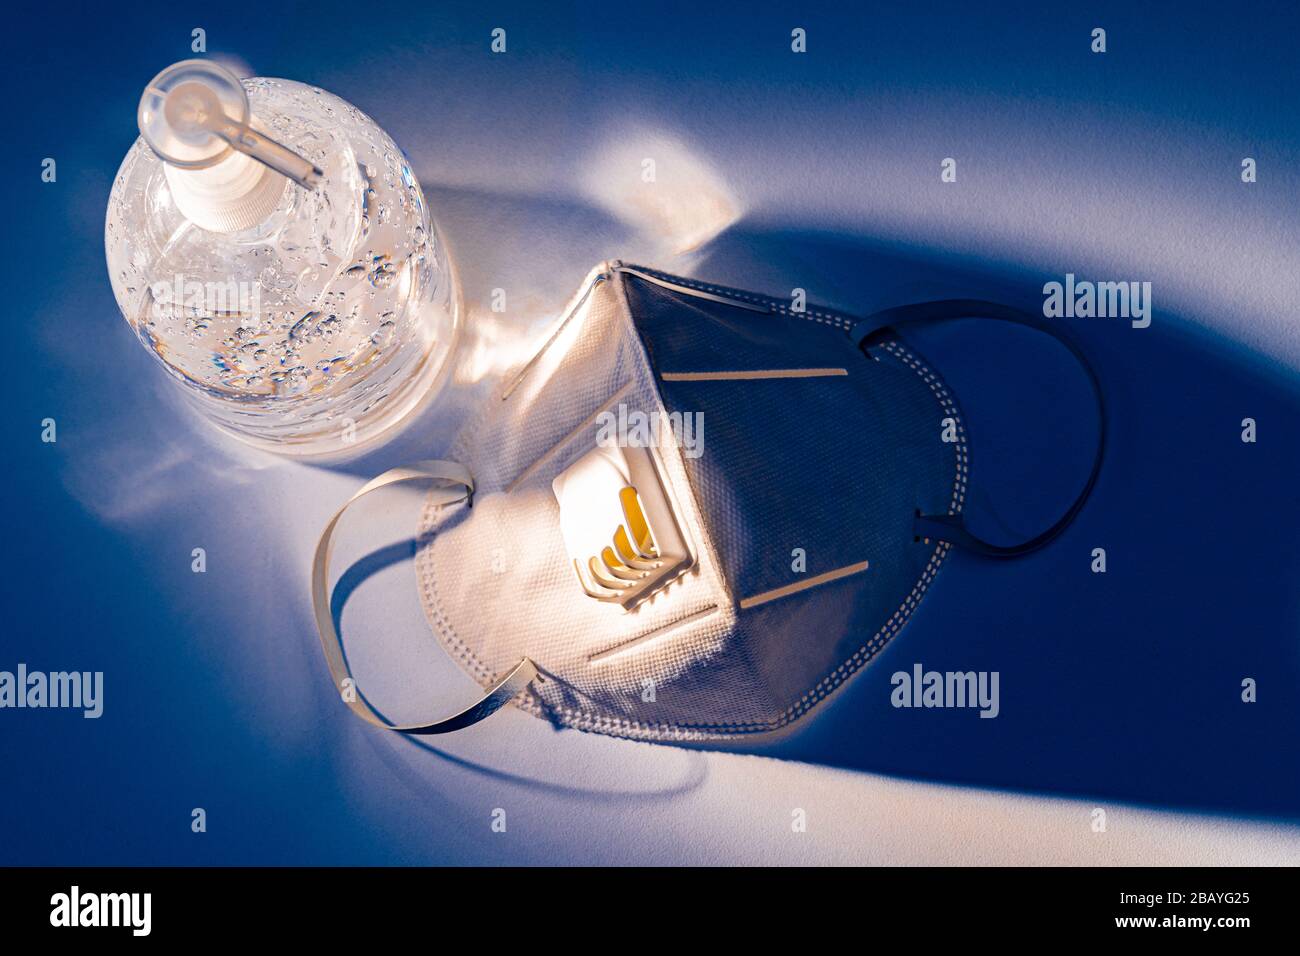 Antiseptisches Handgel und N95-Maske auf weißem Tisch mit dramatischem blauen Lichteffekt, Gesundheitskonzept Stockfoto